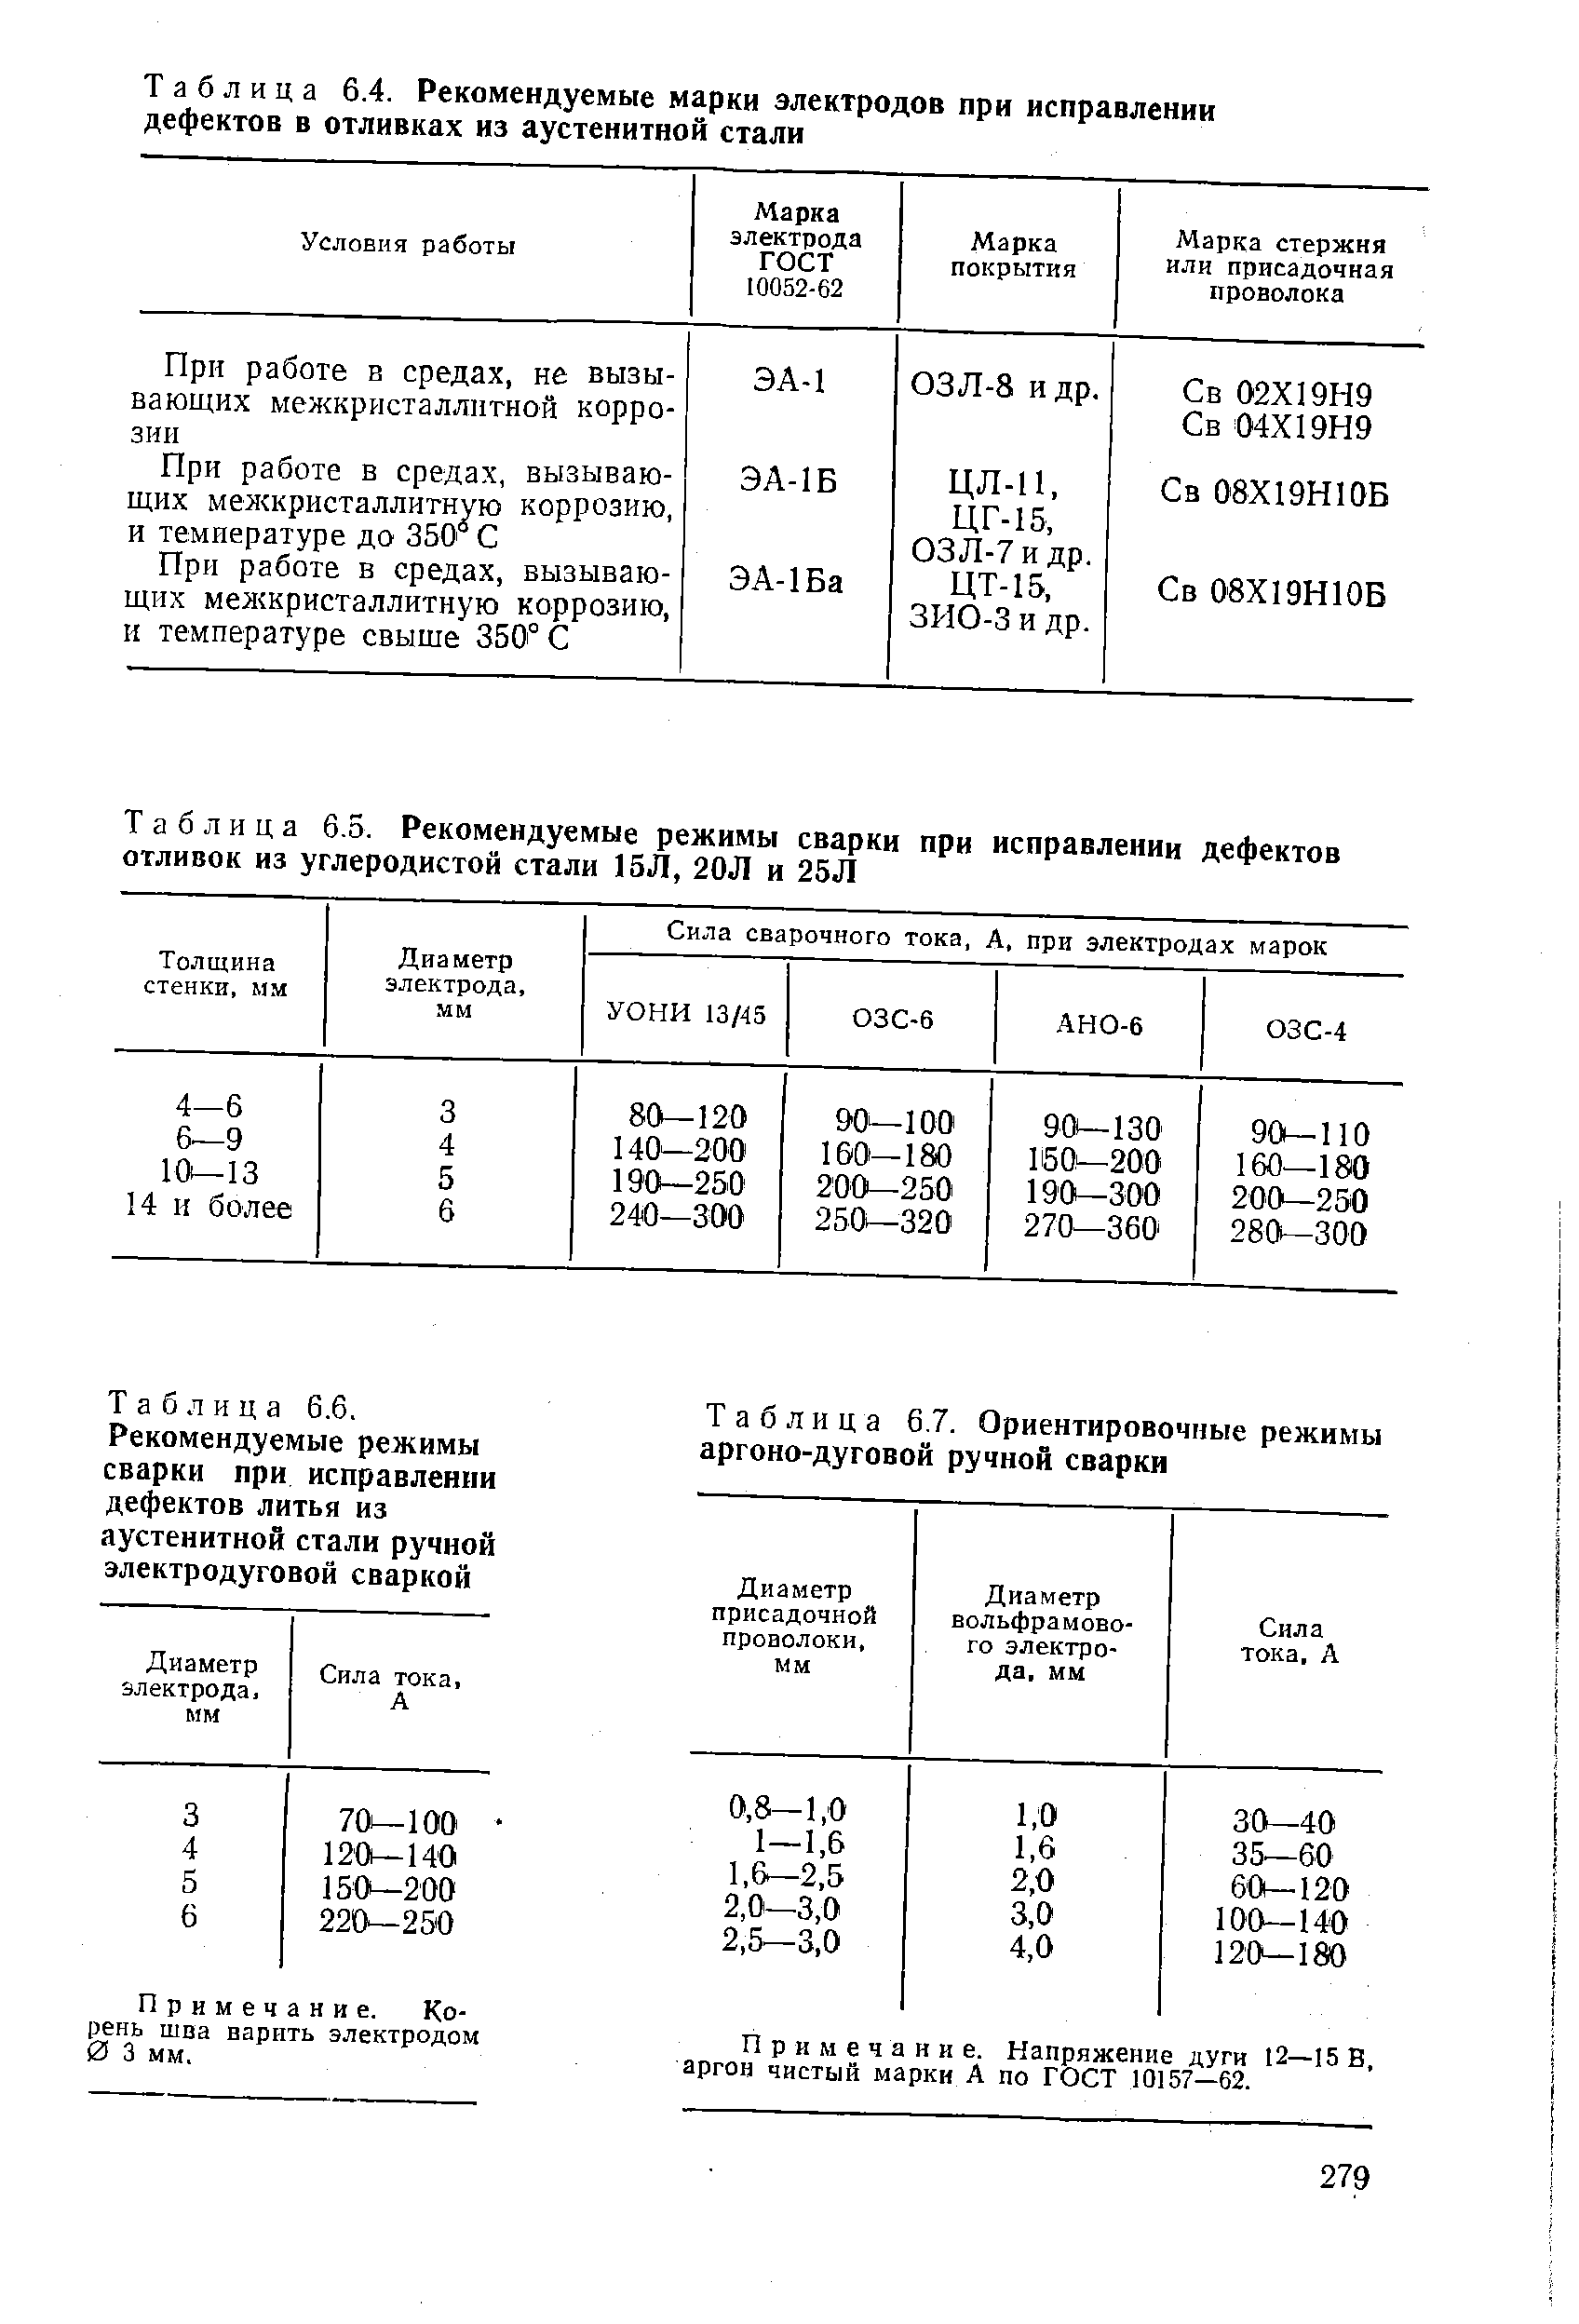 Таблица 6.7. Ориентировочные режимы аргоно-дуговой ручной сварки
